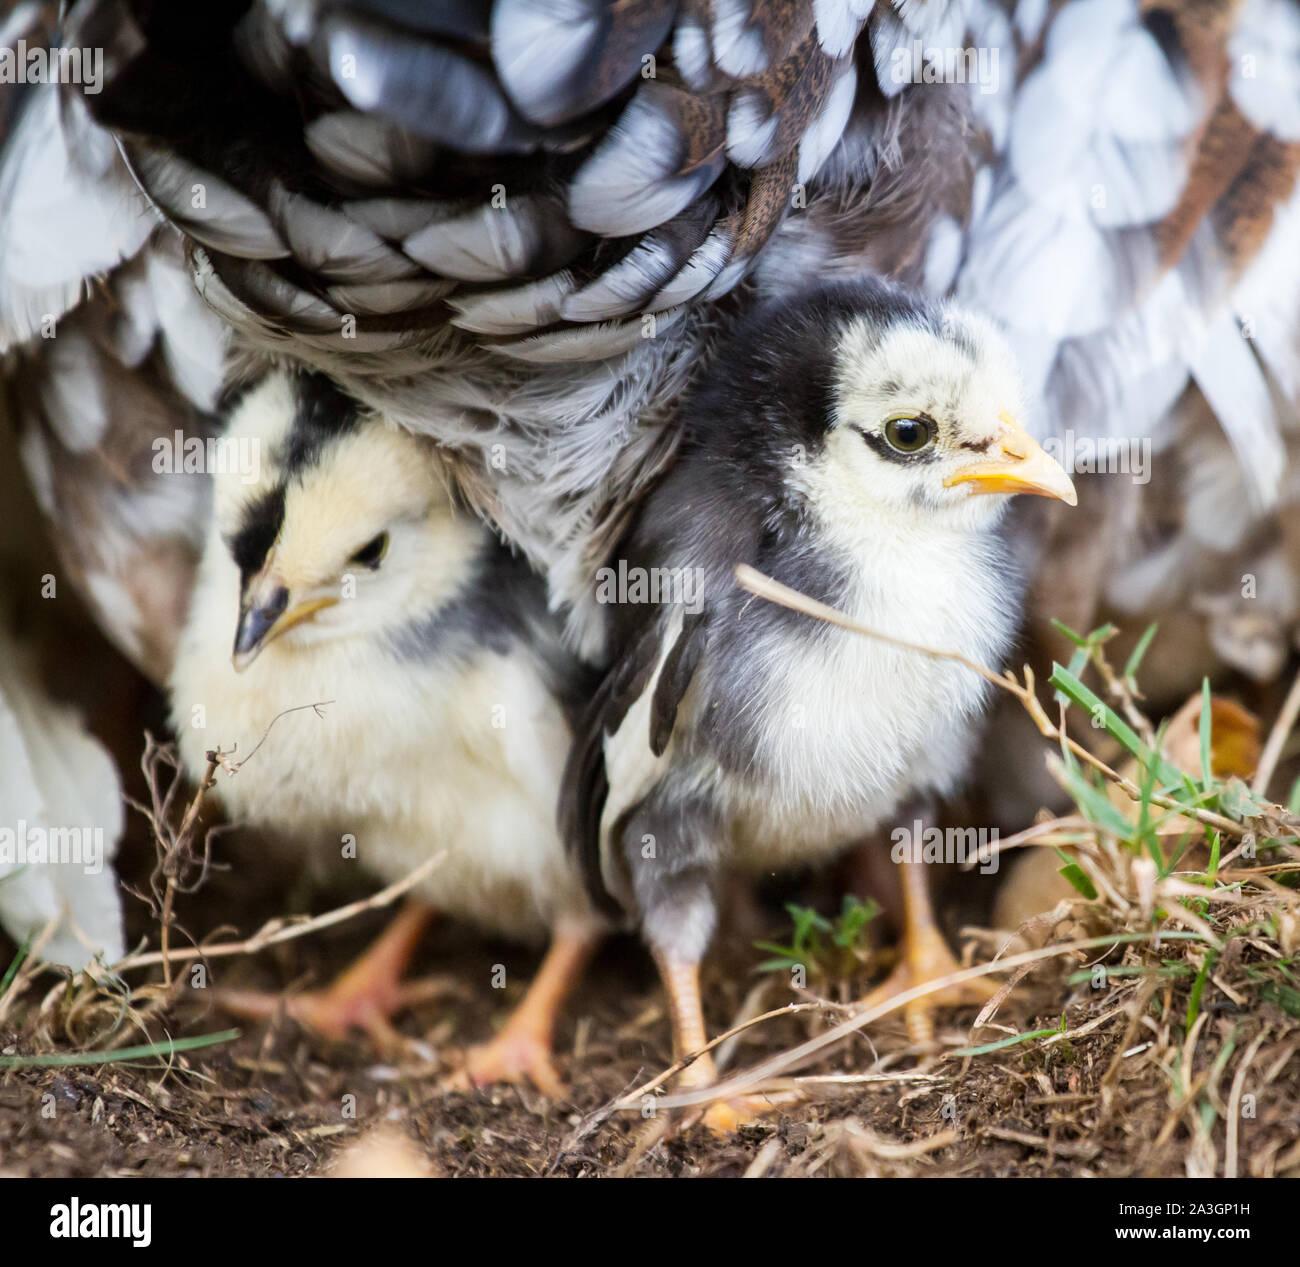 Deux oisillons sous la mère poule - Stoapiperl Steinhendl /, une espèce en voie d'Autriche race de poulet Banque D'Images